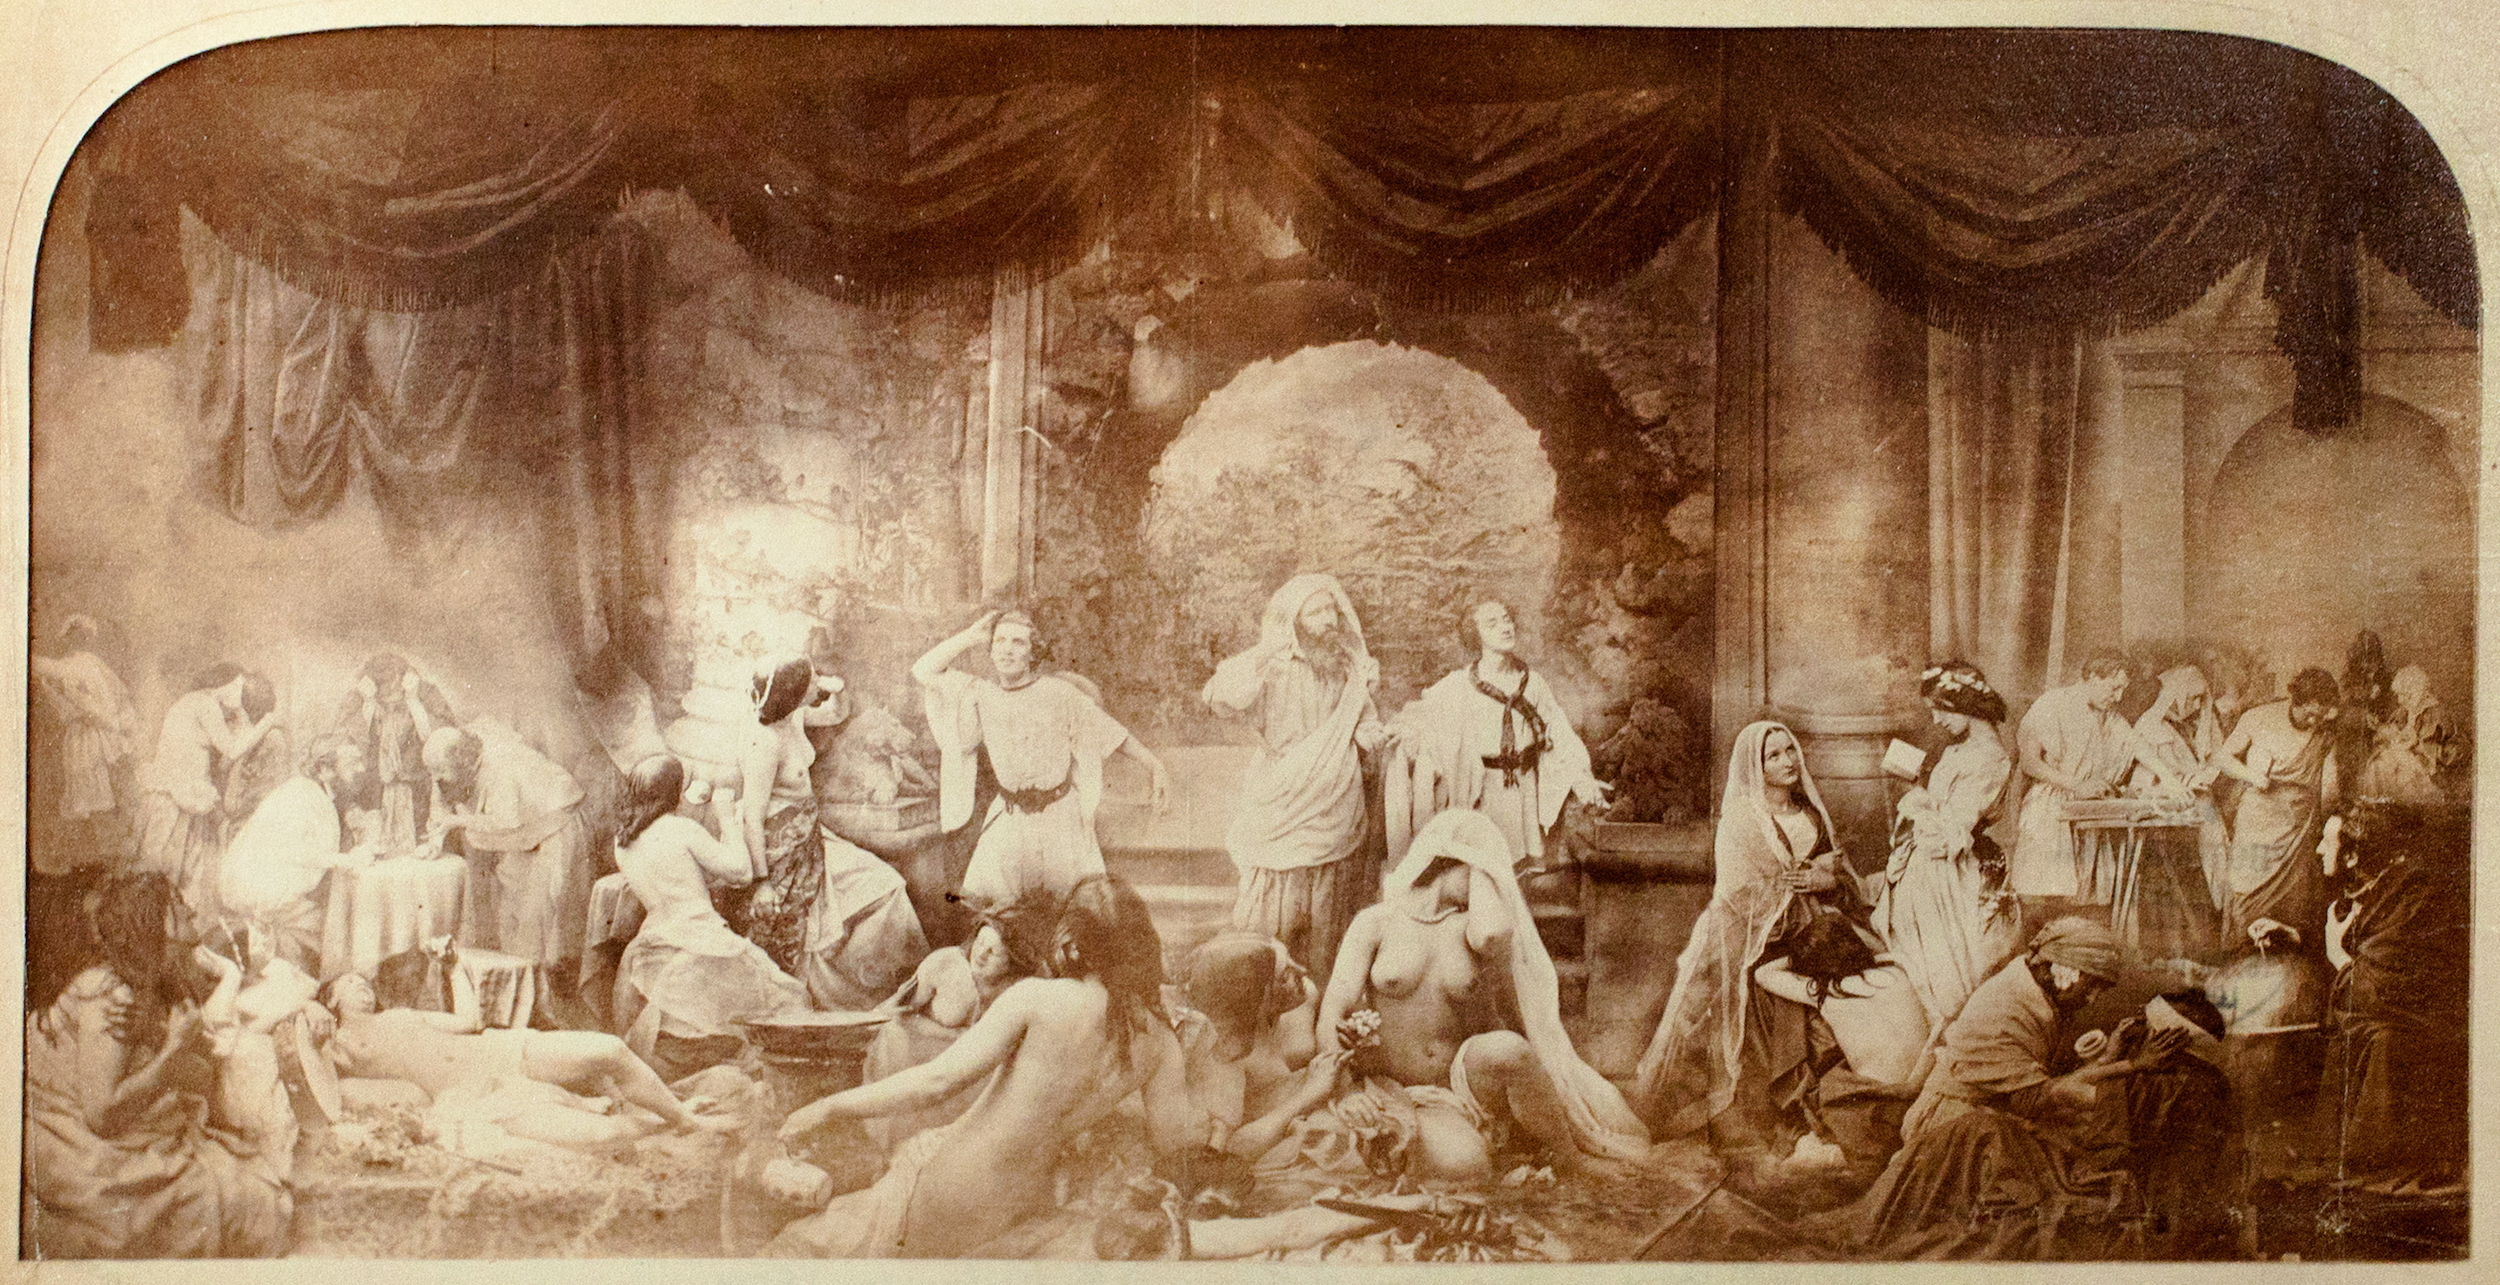 صور مركبة، التاريخ المبكر  للصور المركبة by Oscar Gustave Rejlander - 1858 - 41.0 x 79.0 سم 